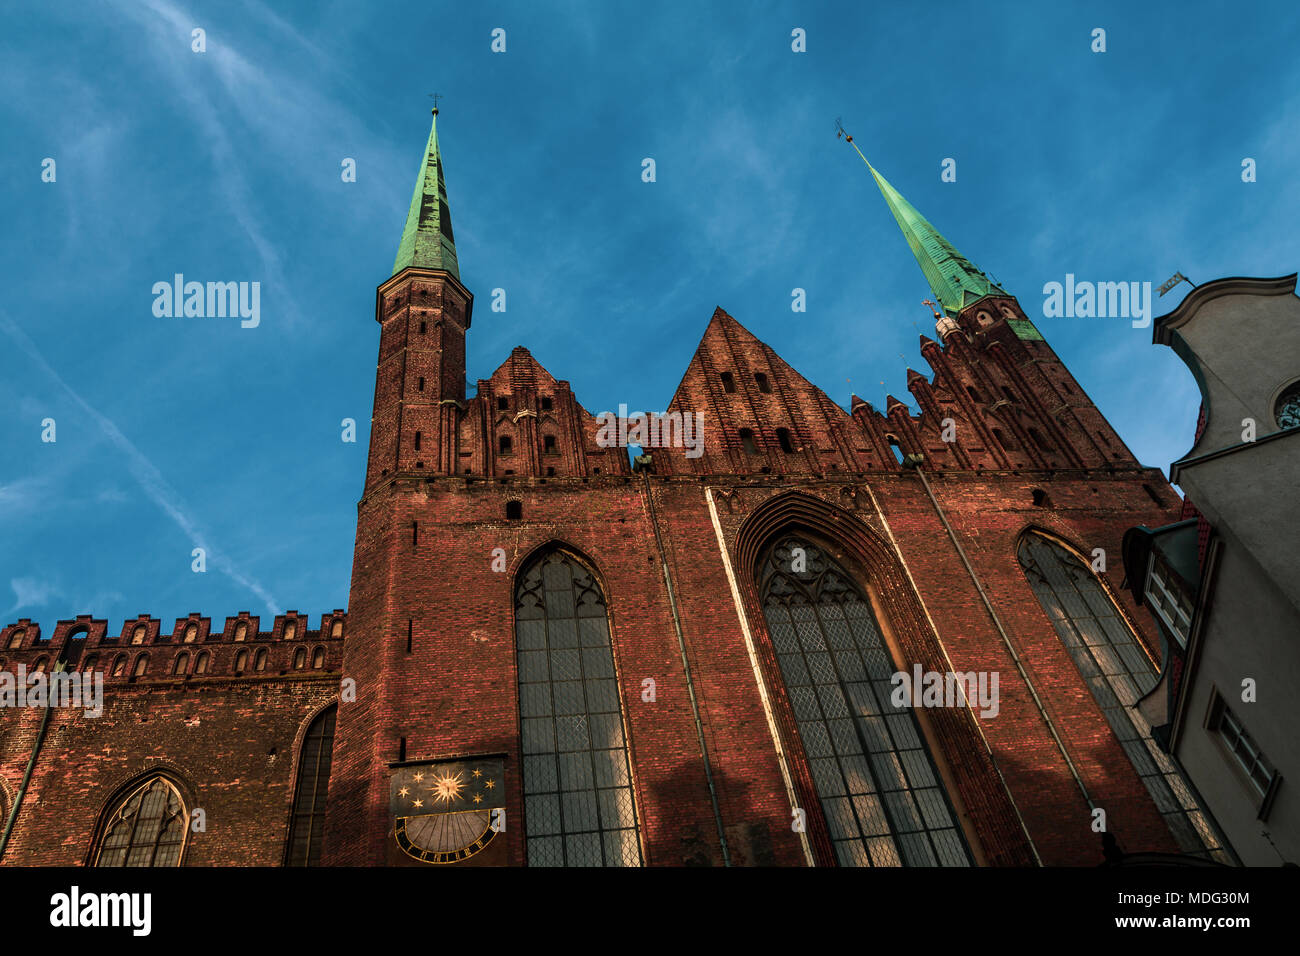 St. Mary's Church, Gdansk, Poland Stock Photo